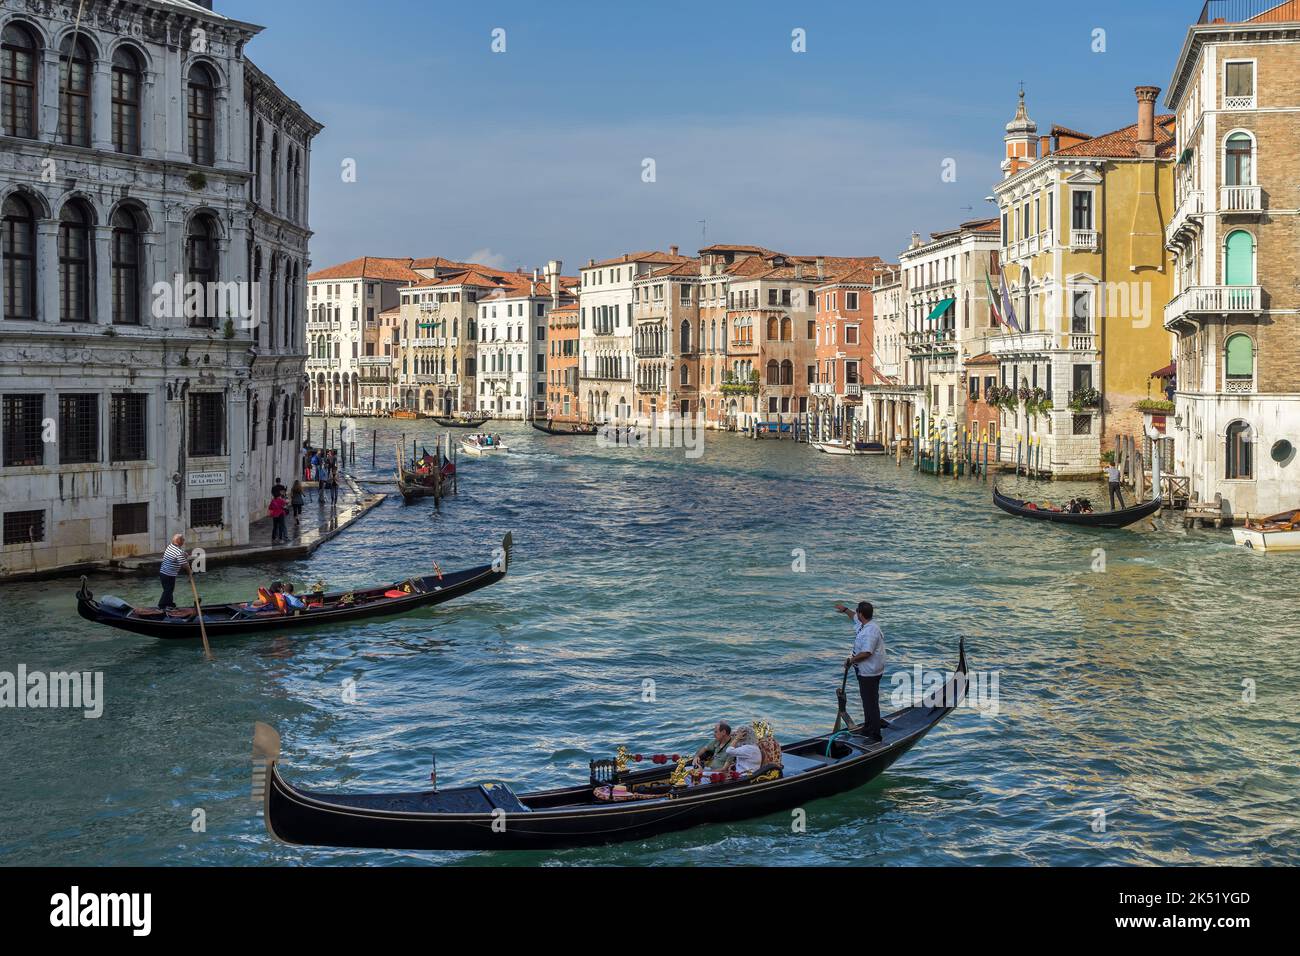 VENISE, ITALIE - OCTOBRE 12 : les télécabines plantent leur commerce sur le Grand Canal de Venise sur 12 octobre 2014. Personnes non identifiées Banque D'Images